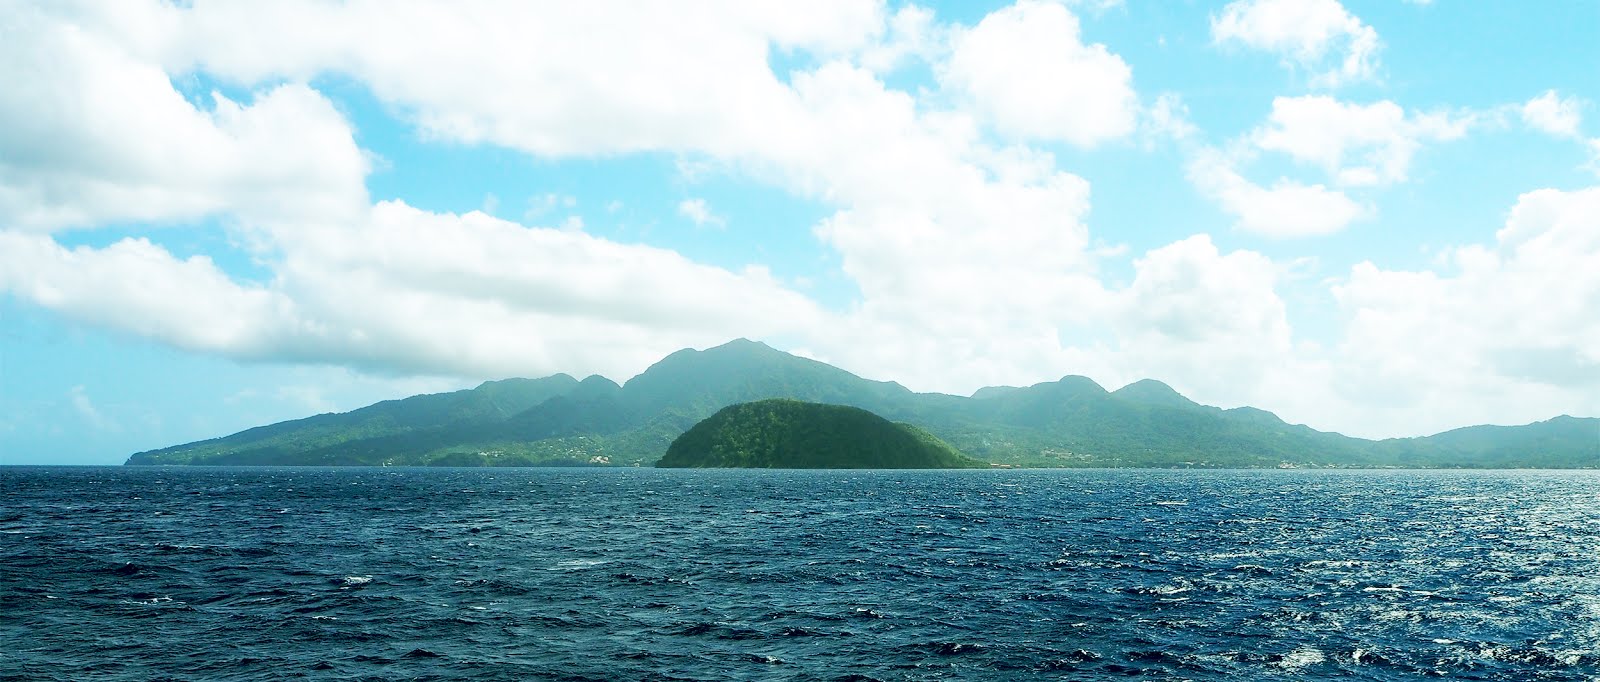 Dominica island